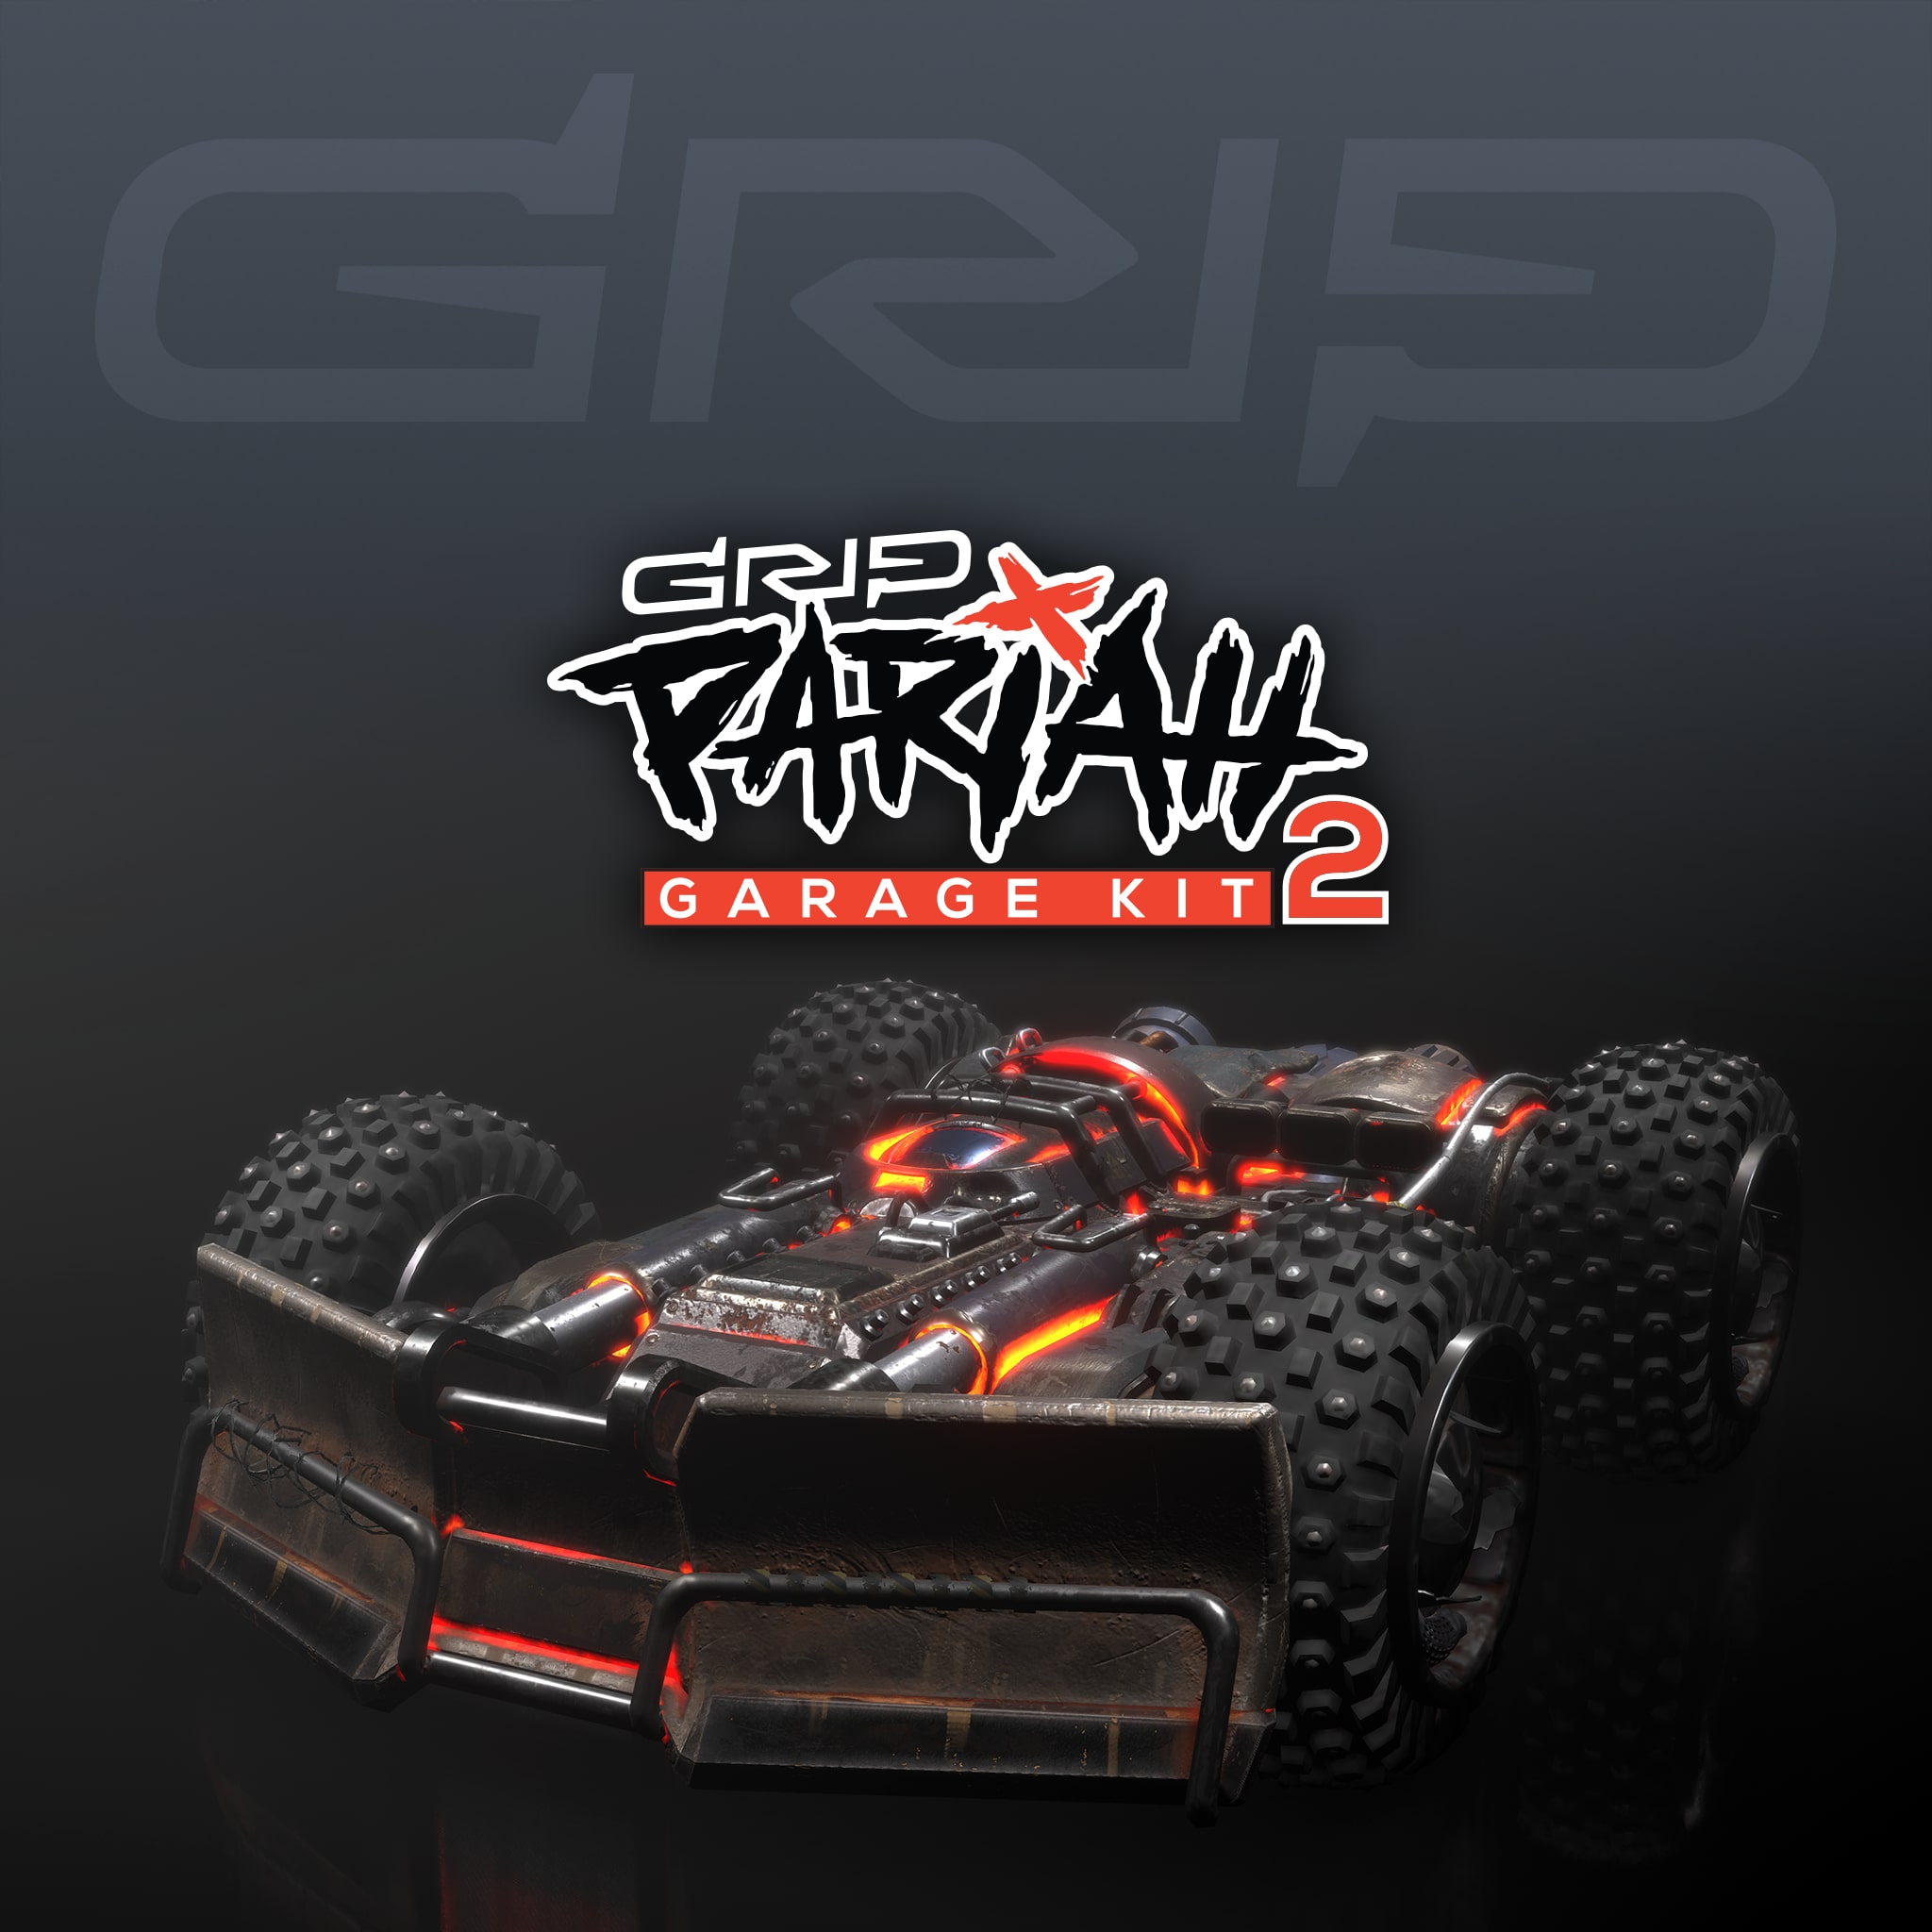 GRIP: Pariah Garage Kit 2